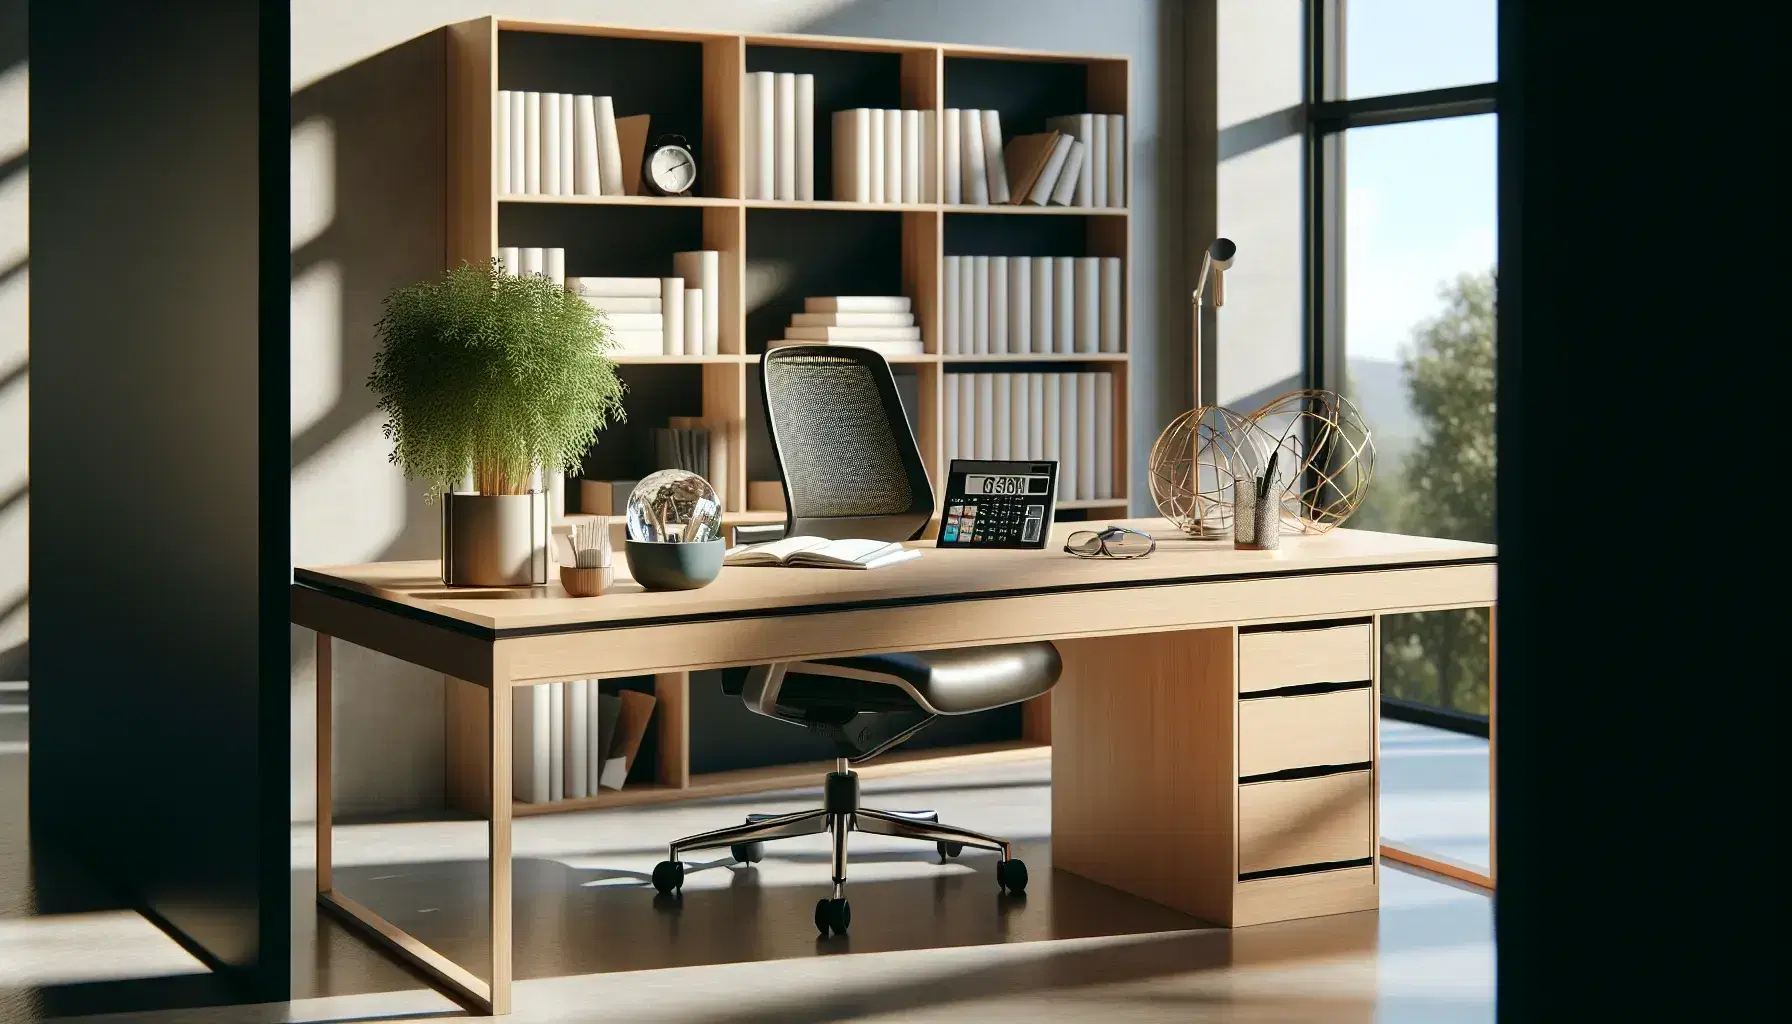 Oficina moderna y luminosa con escritorio de madera, silla ergonómica, planta interior y estantería con libros y objetos decorativos.